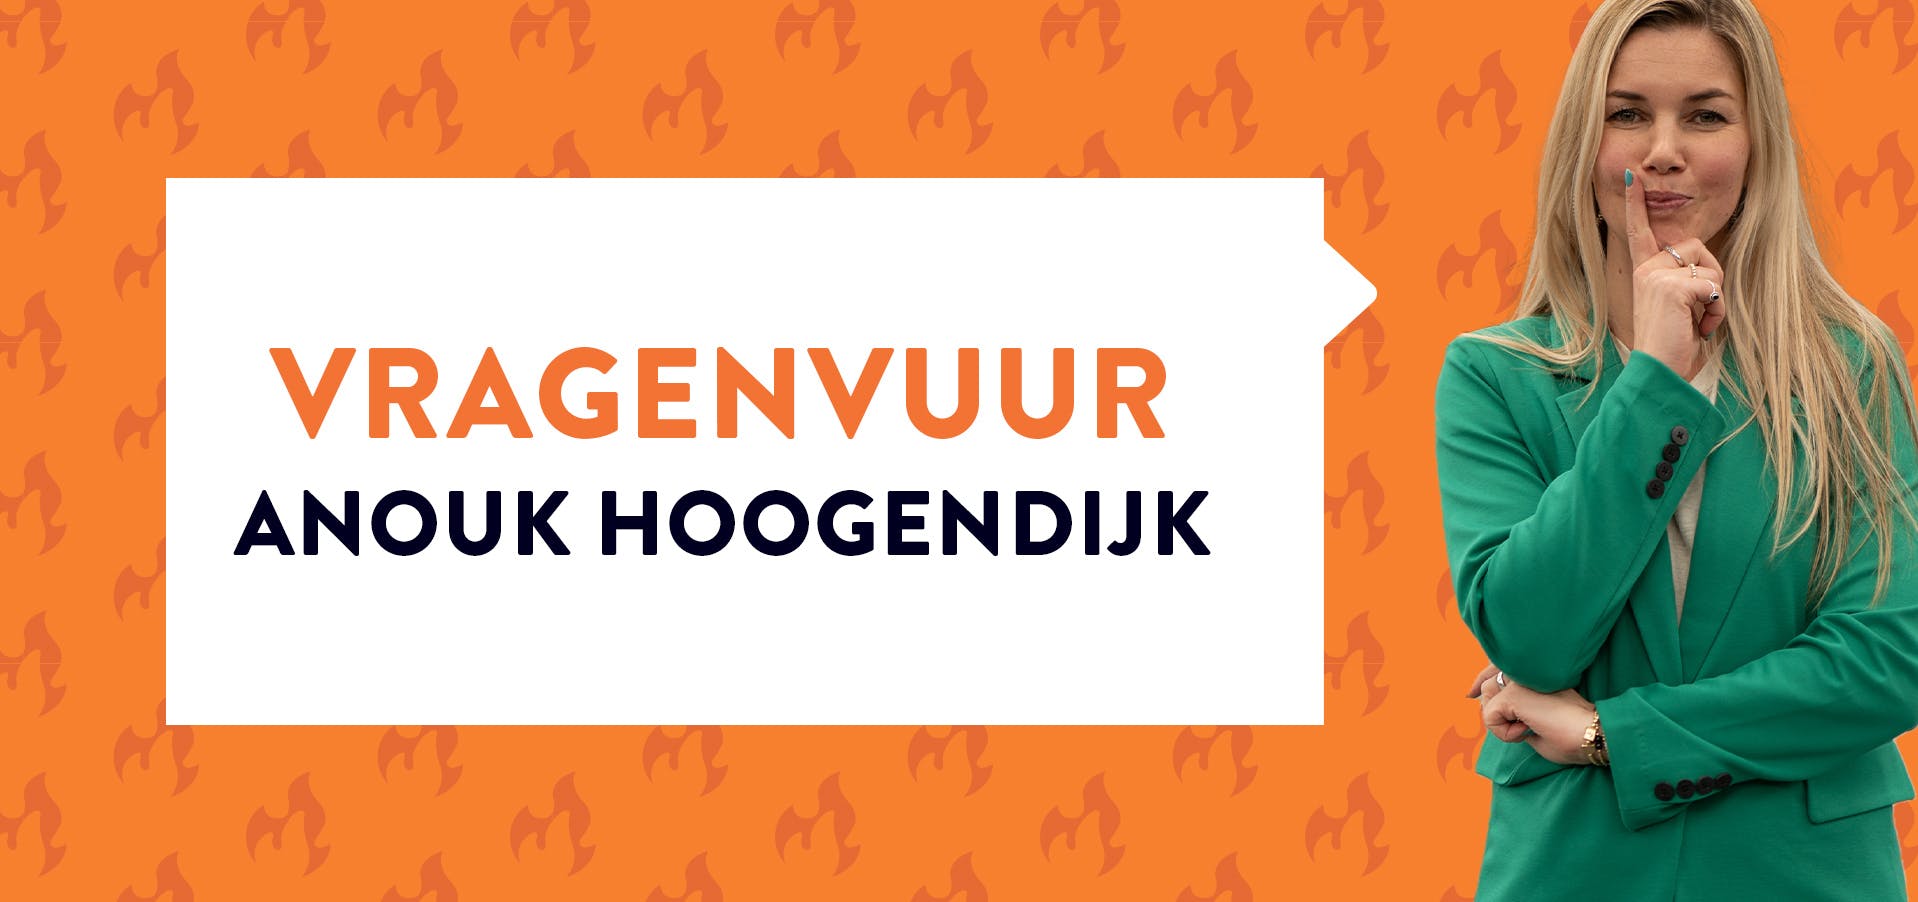 Anouk Hoogendijk poserend in groene blazer bij oranje achtergrond